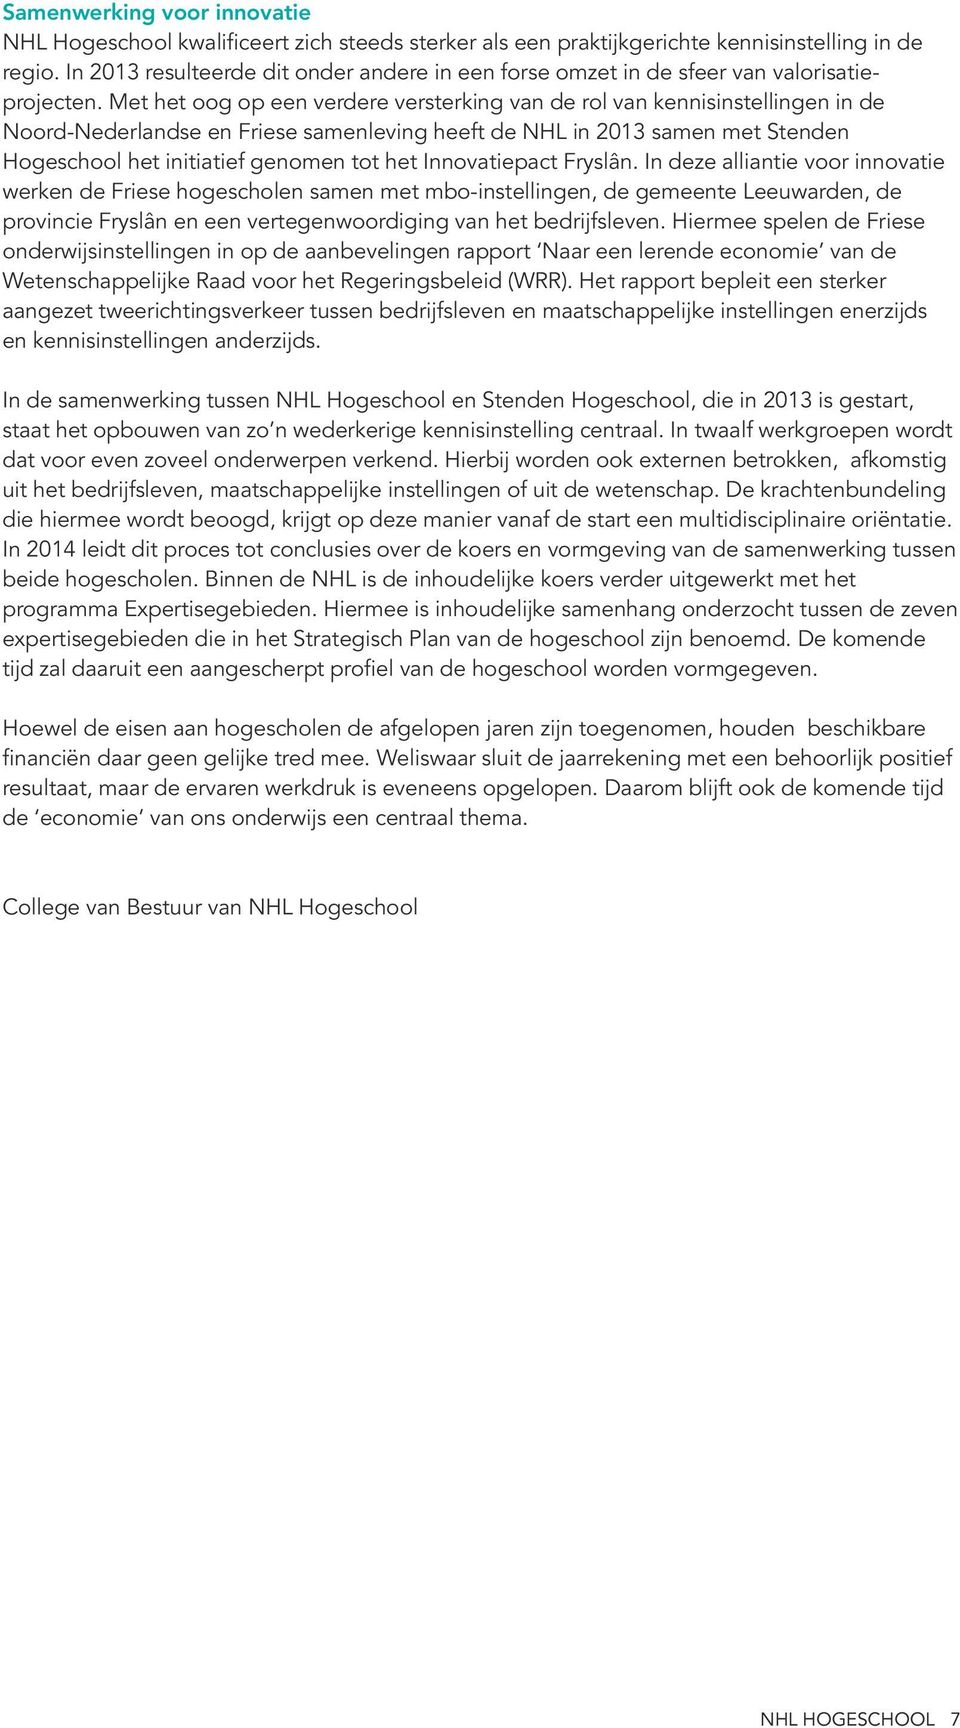 Met het oog op een verdere versterking van de rol van kennisinstellingen in de Noord-Nederlandse en Friese samenleving heeft de NHL in 2013 samen met Stenden Hogeschool het initiatief genomen tot het